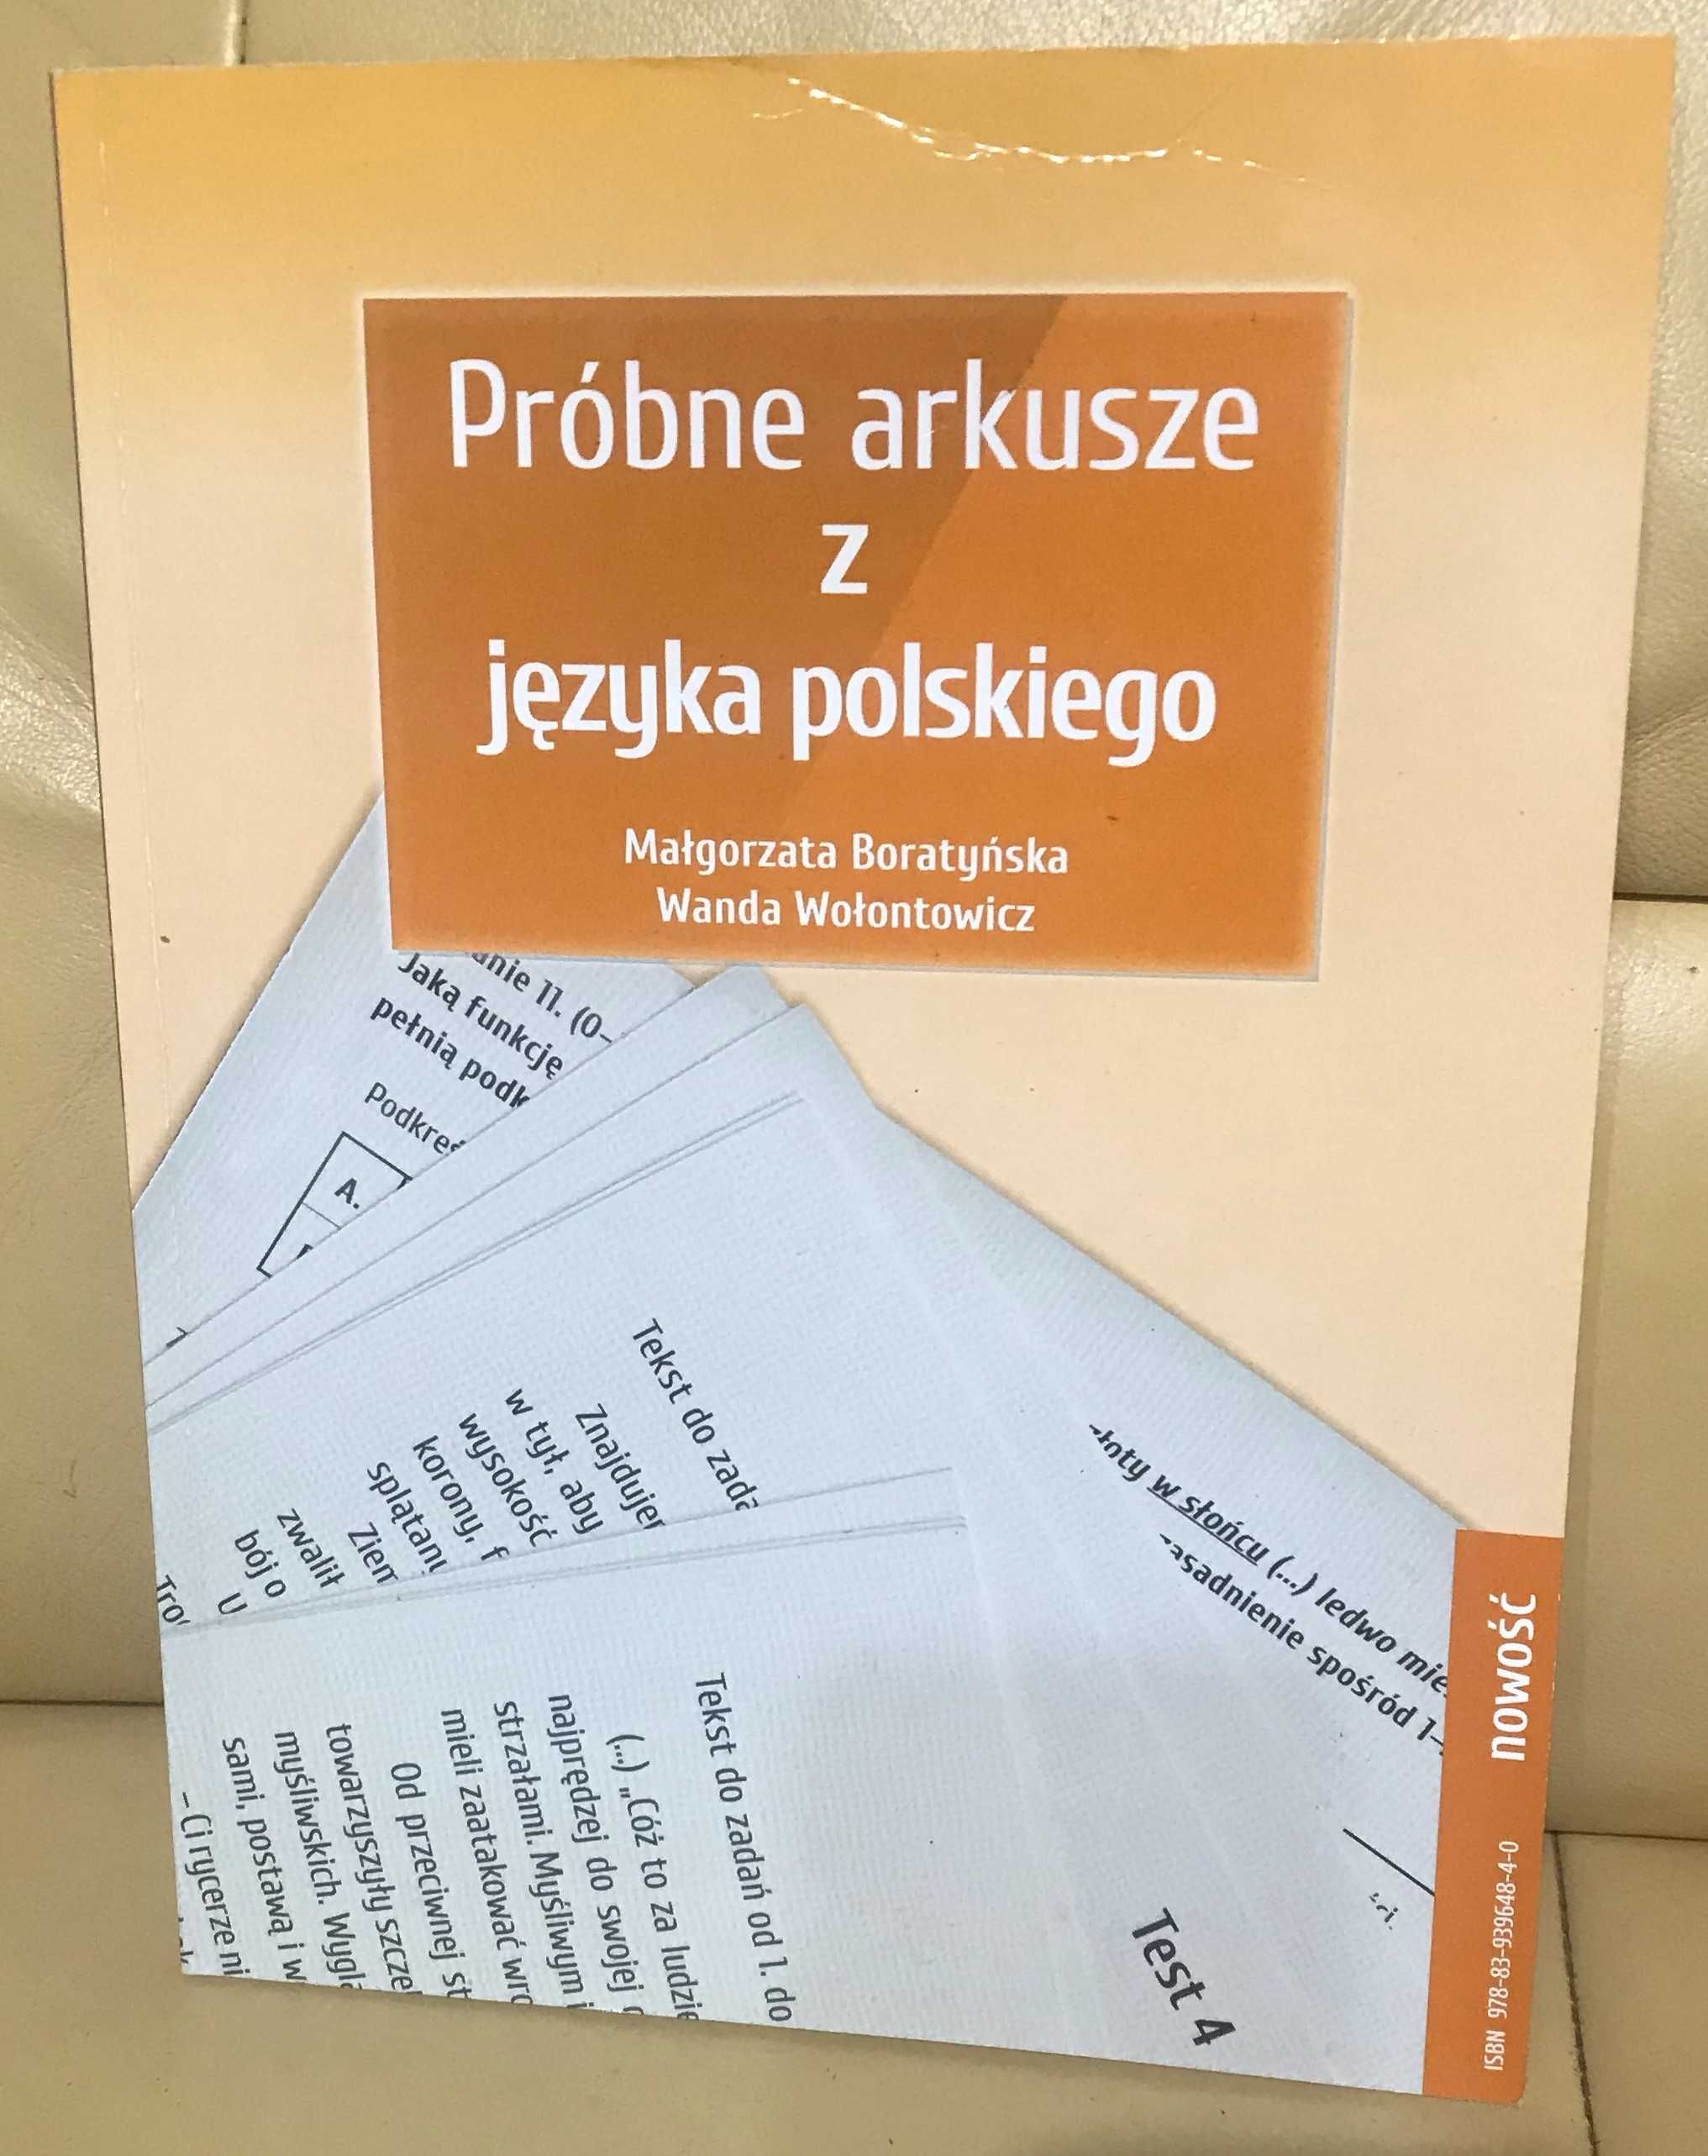 Próbne arkusze z matematyki, Próbne arkusze z języka polskiego